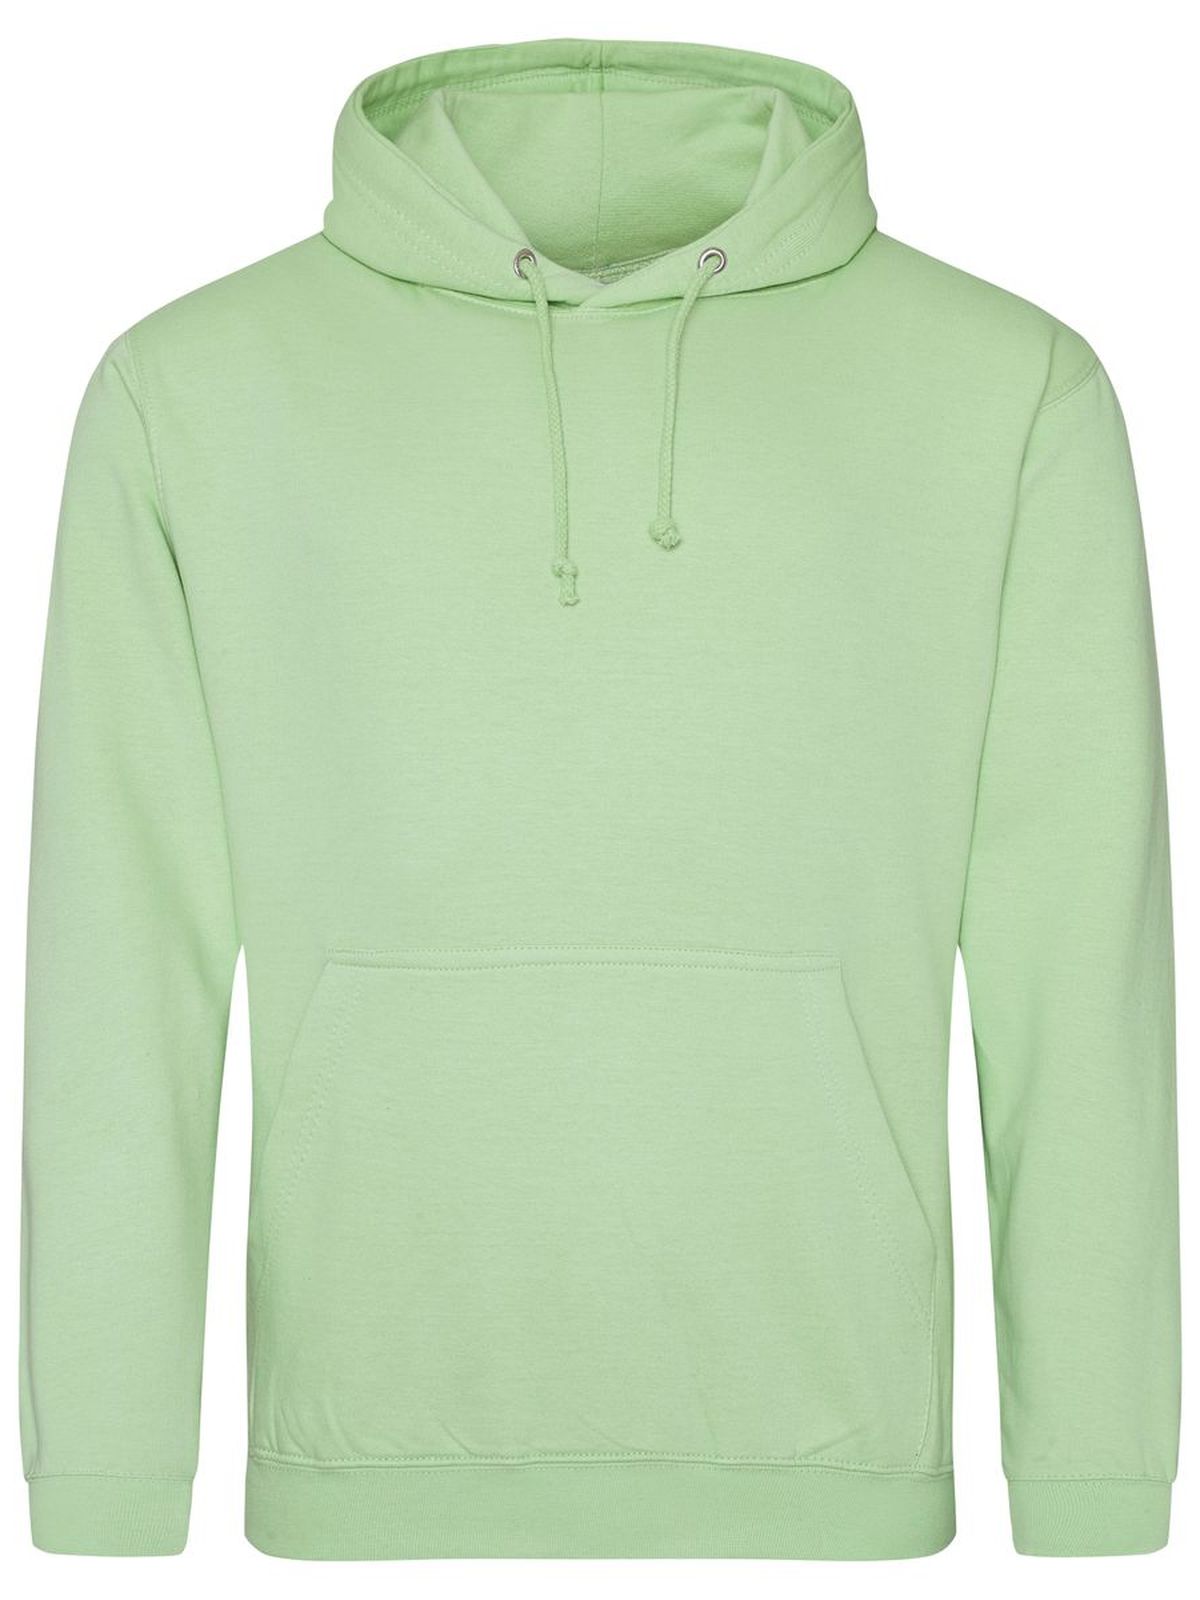 college-hoodie-apple-green.webp